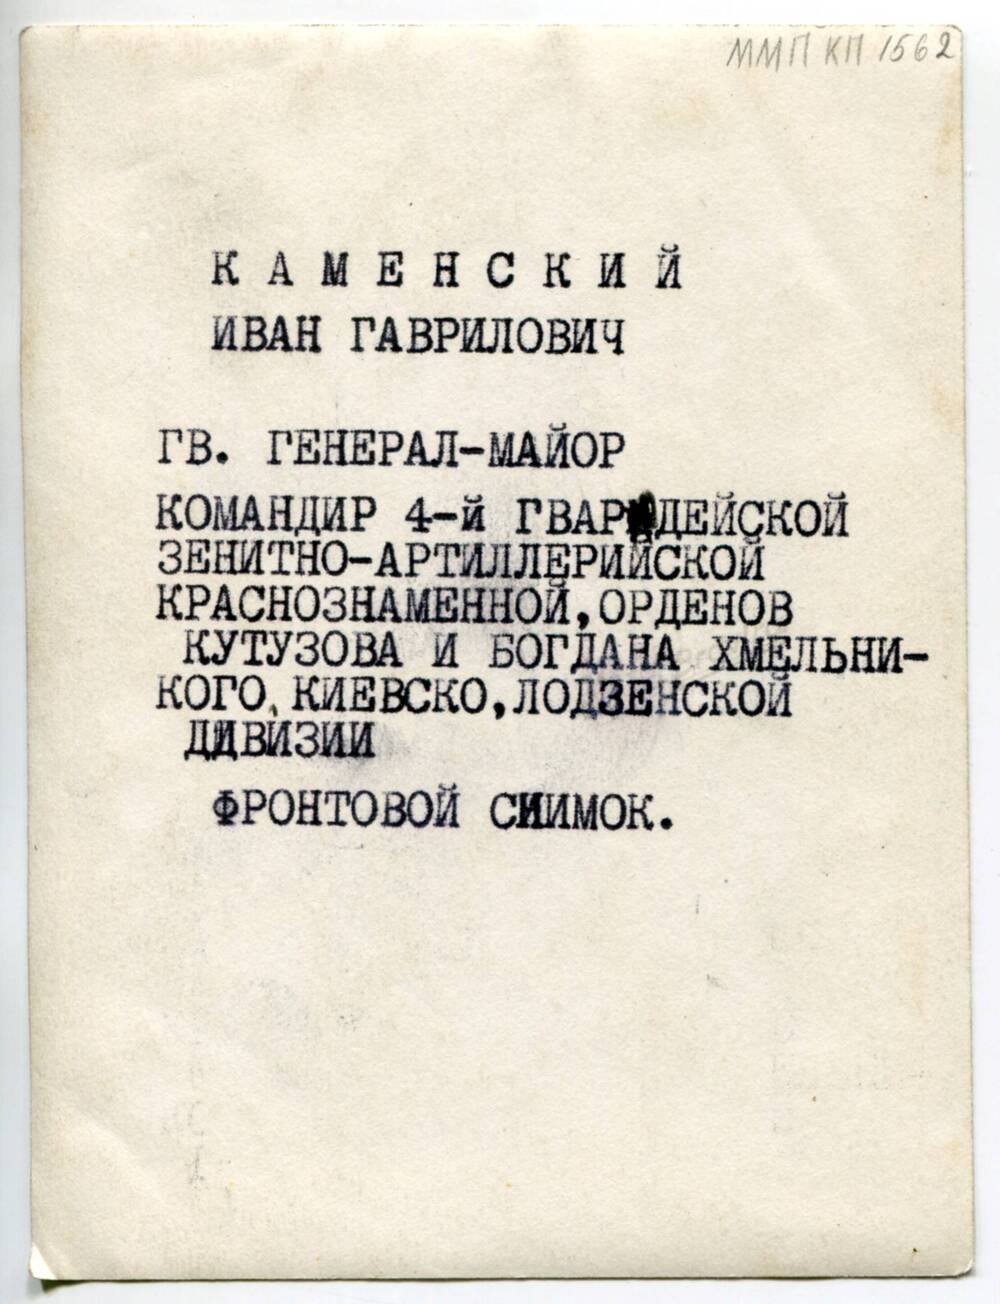 Фотография. Гв. генерал-майор Каменский И.Г. 1945-1946 гг.